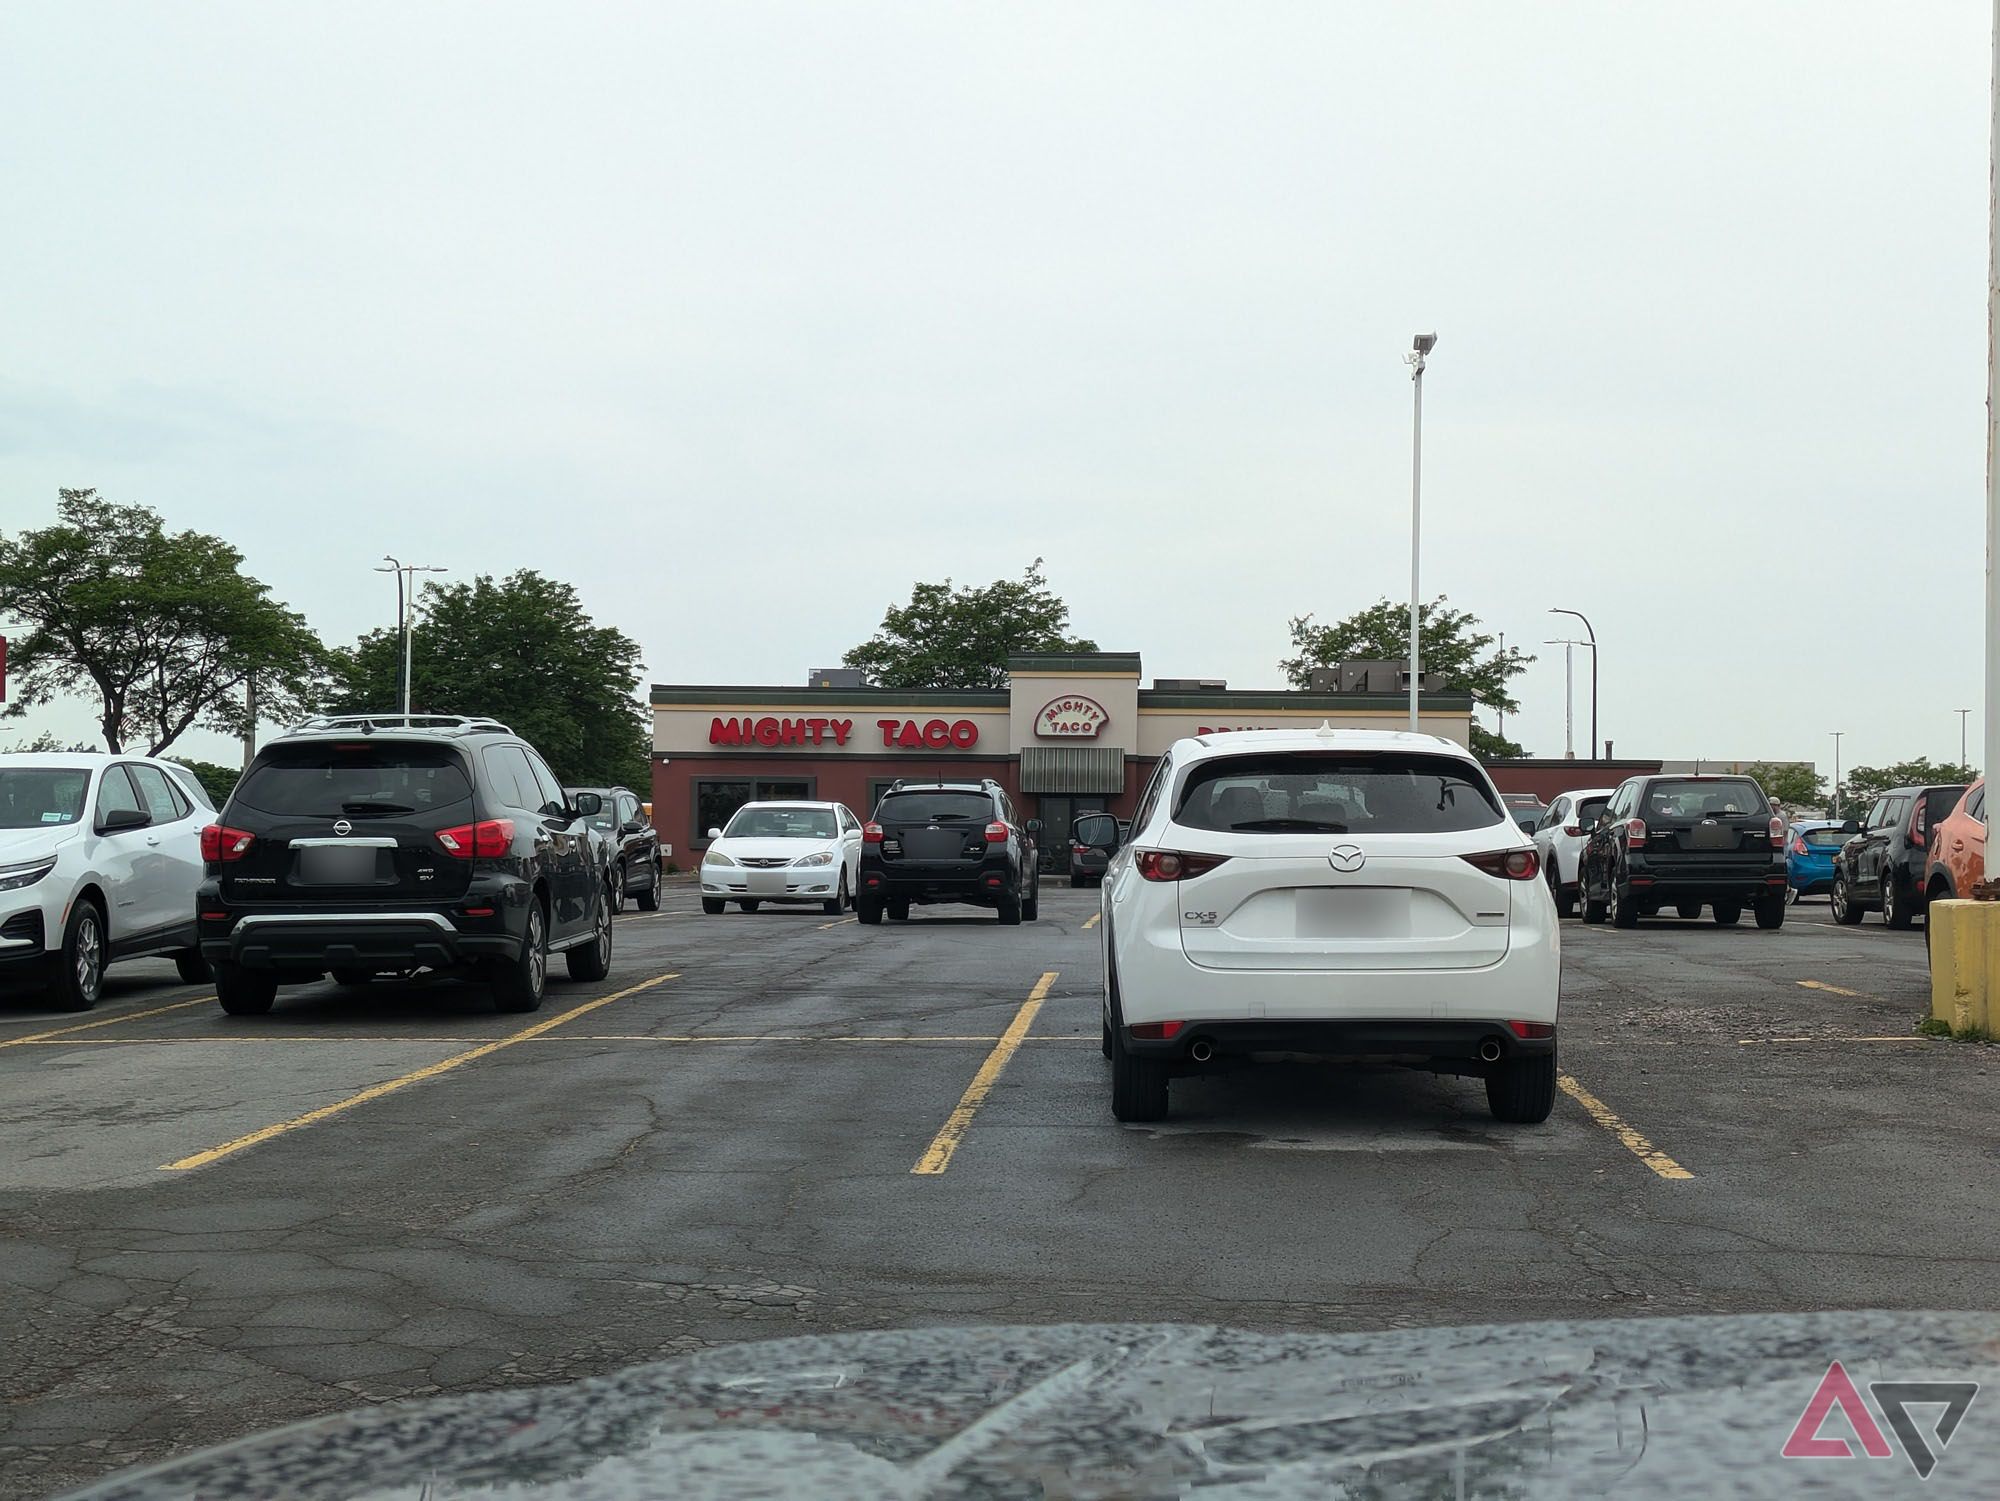 Uma foto tirada do estacionamento de um restaurante fast food ao longe.